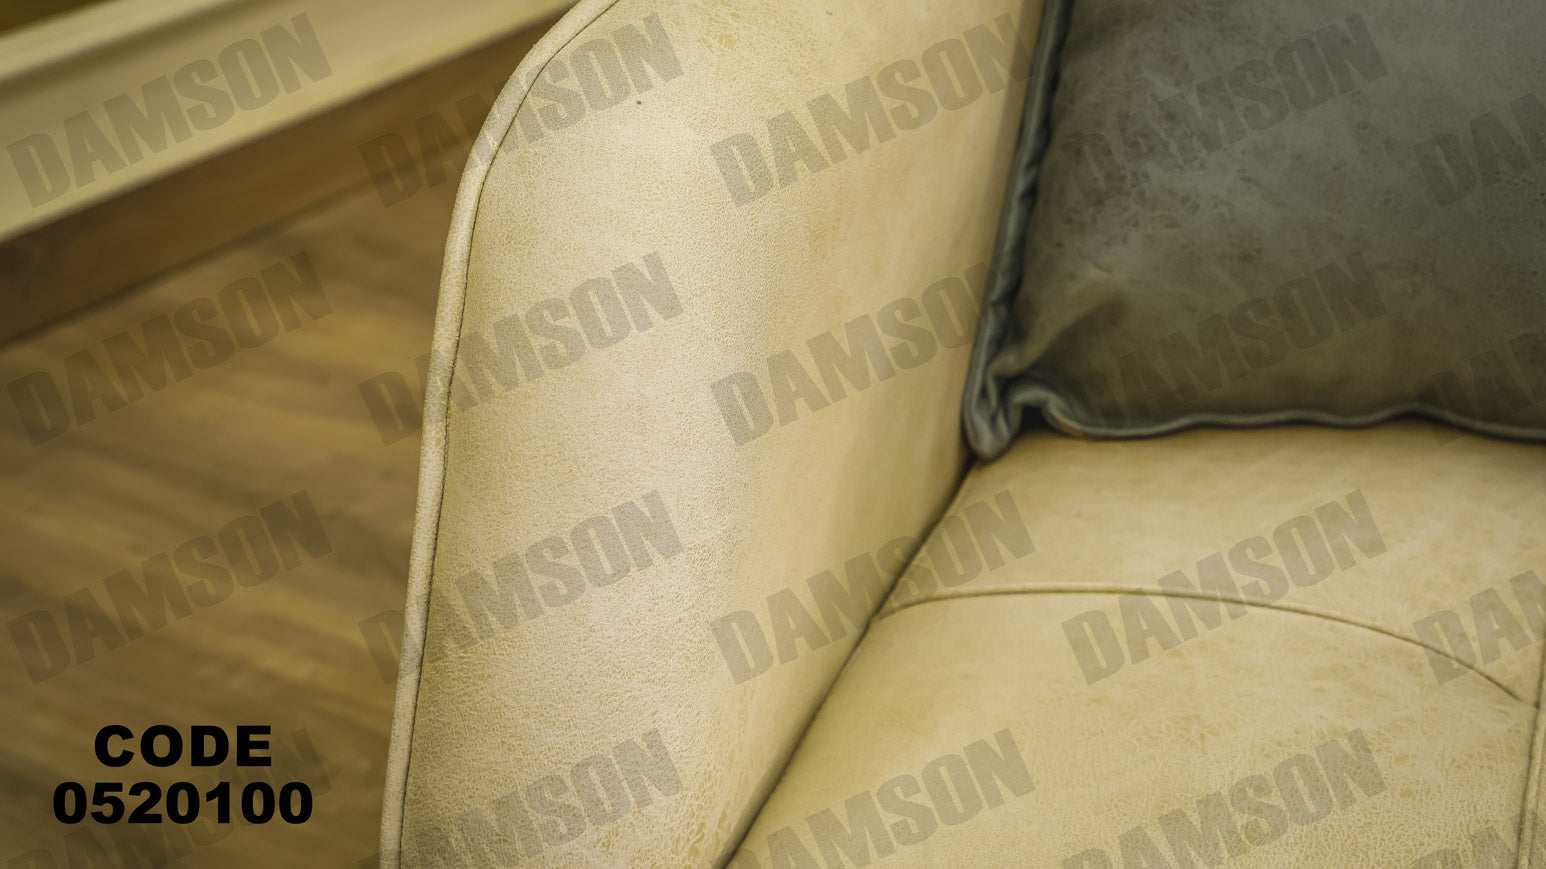 انترية 201 - Damson Furnitureانترية 201